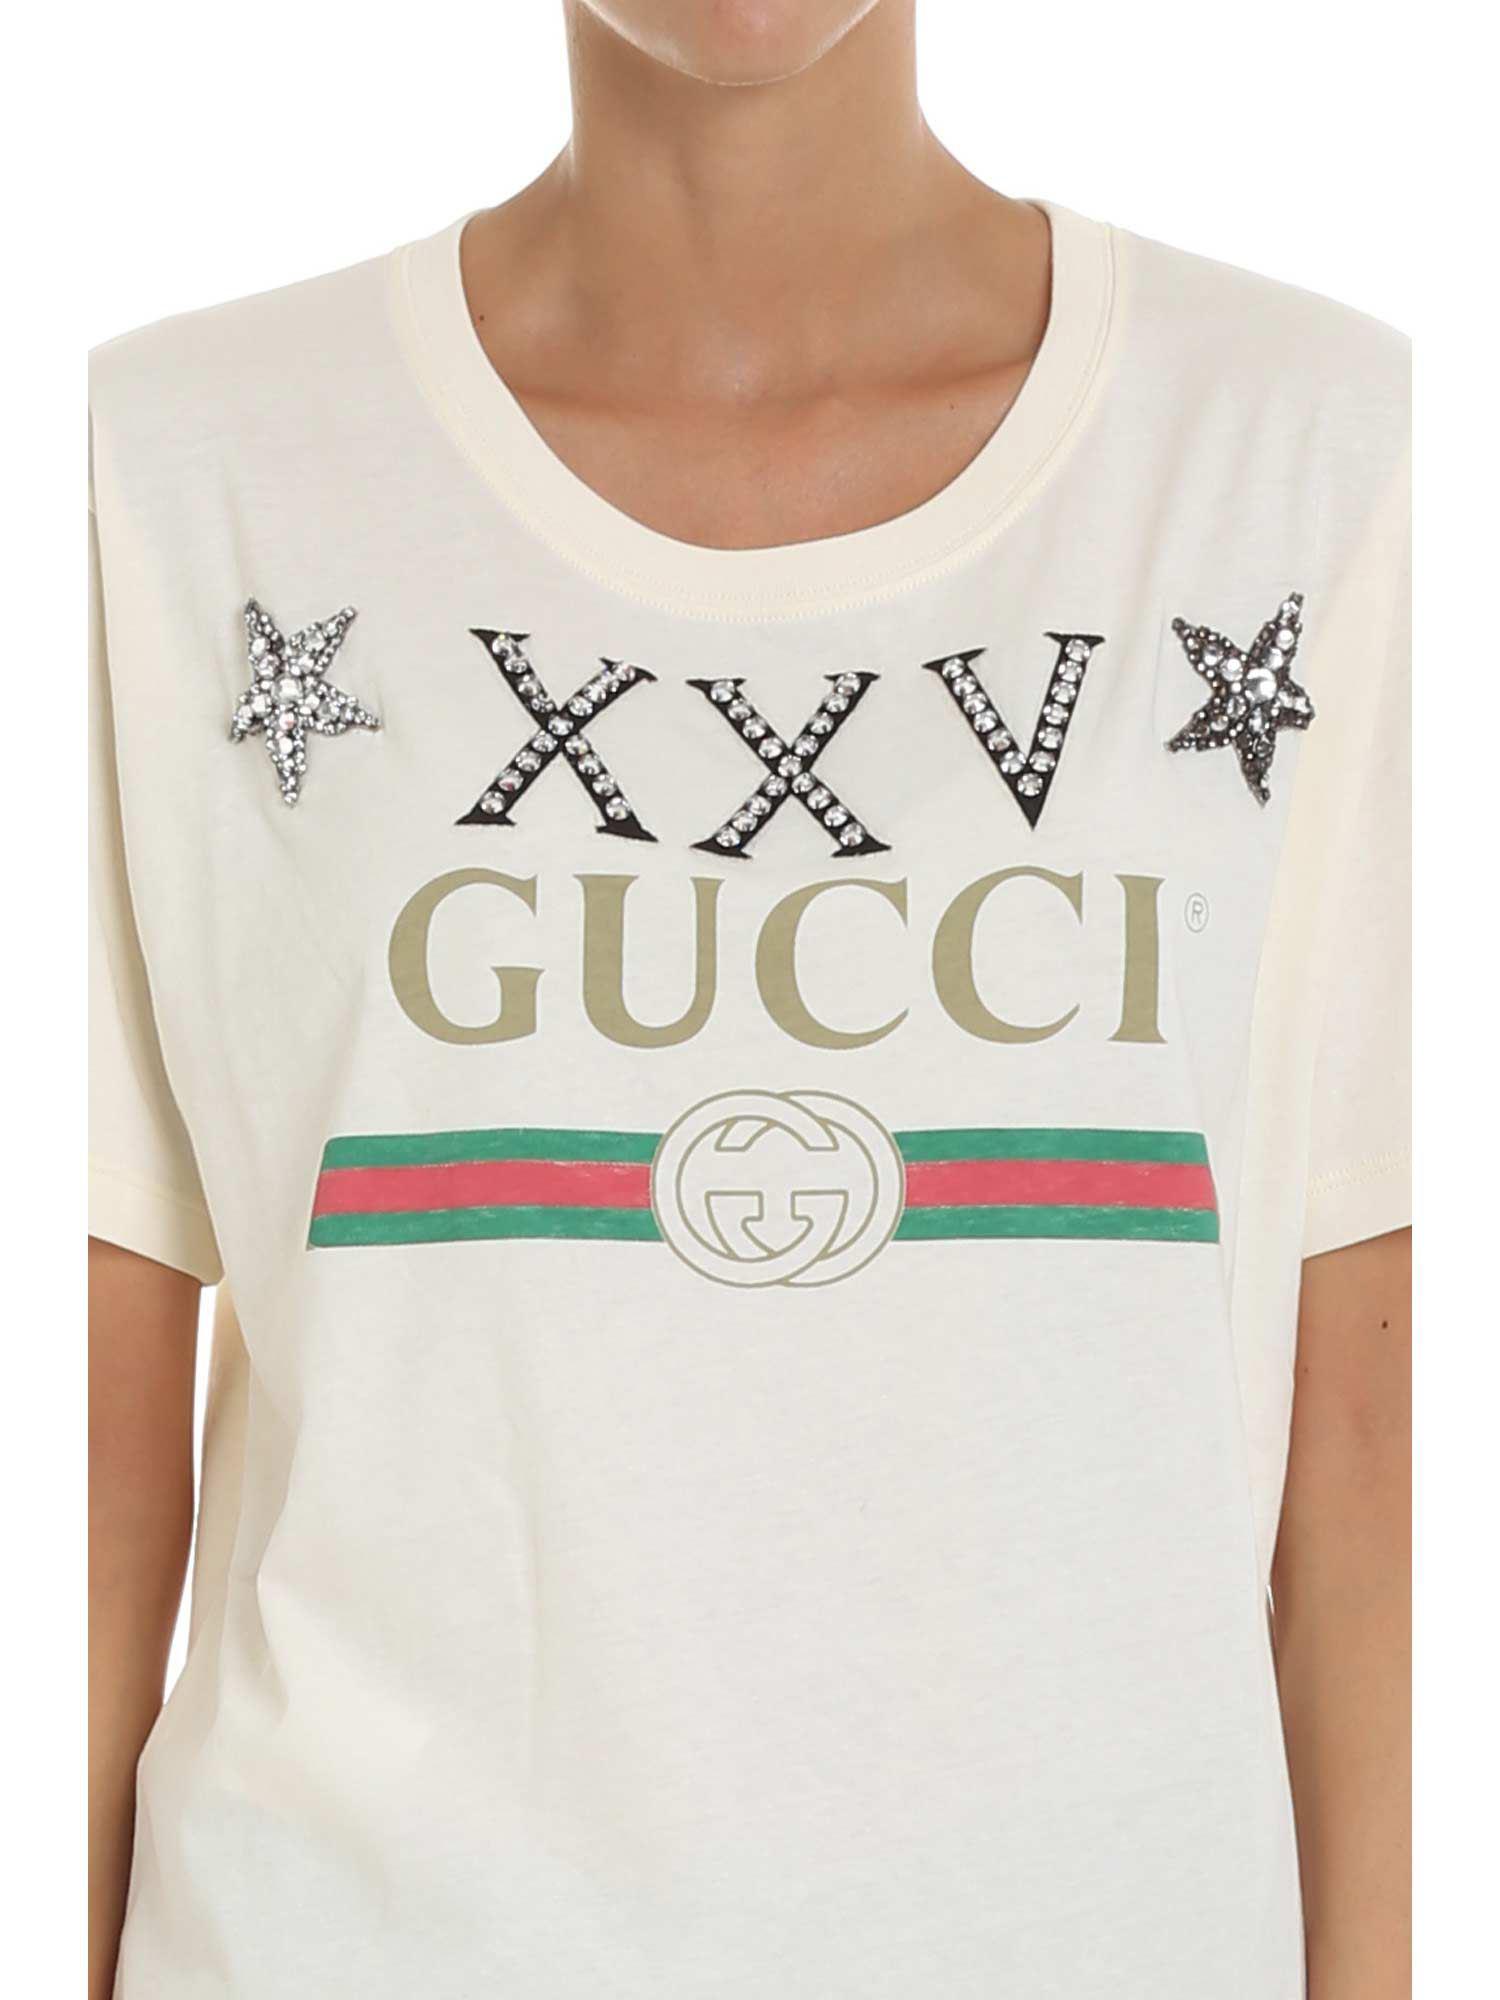 xxv gucci shirt